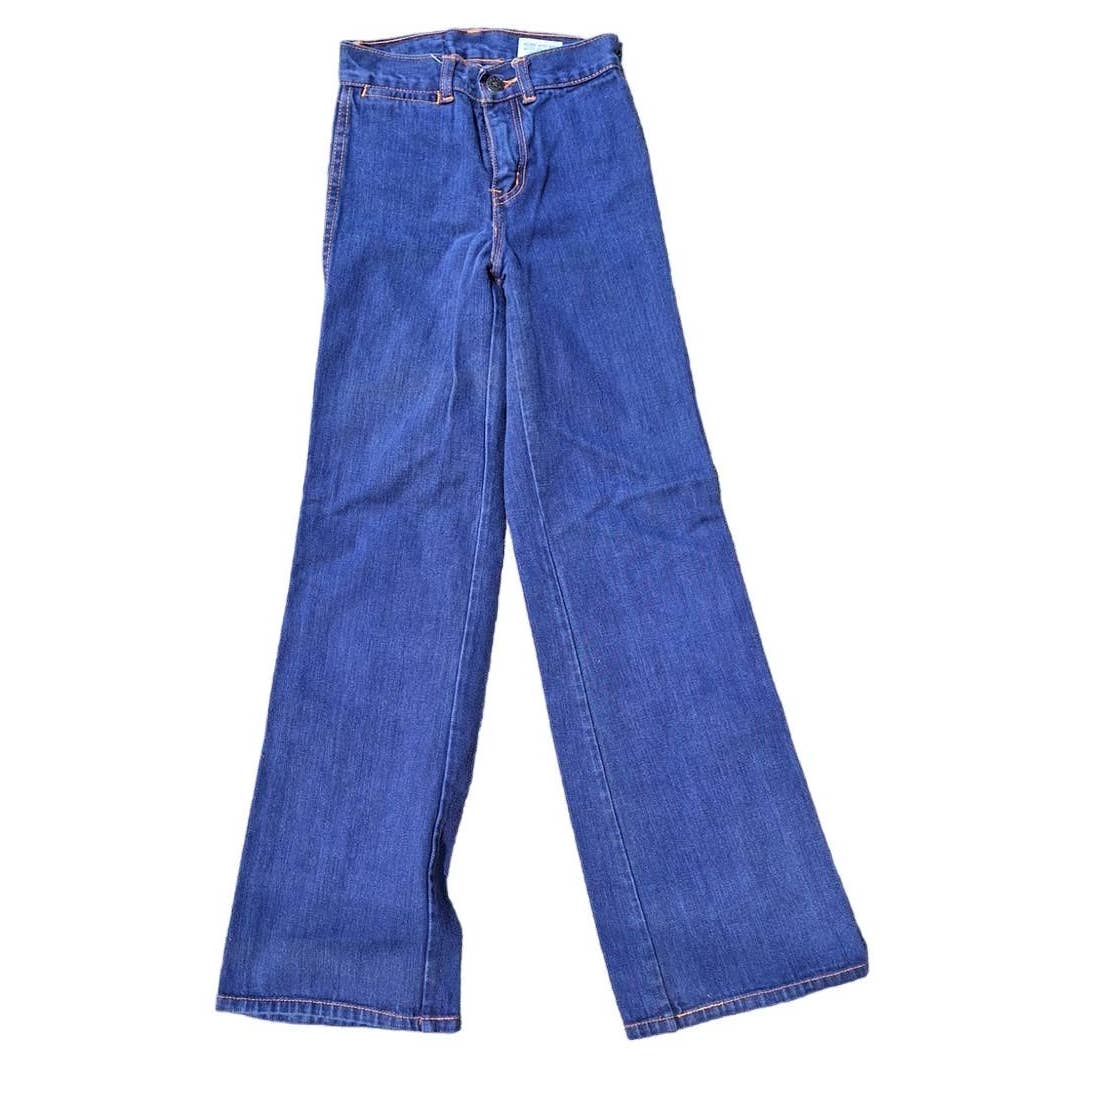 70s Dark Wash Jeans Unisex Kids Size 8 Slim - themallvintage The Mall Vintage